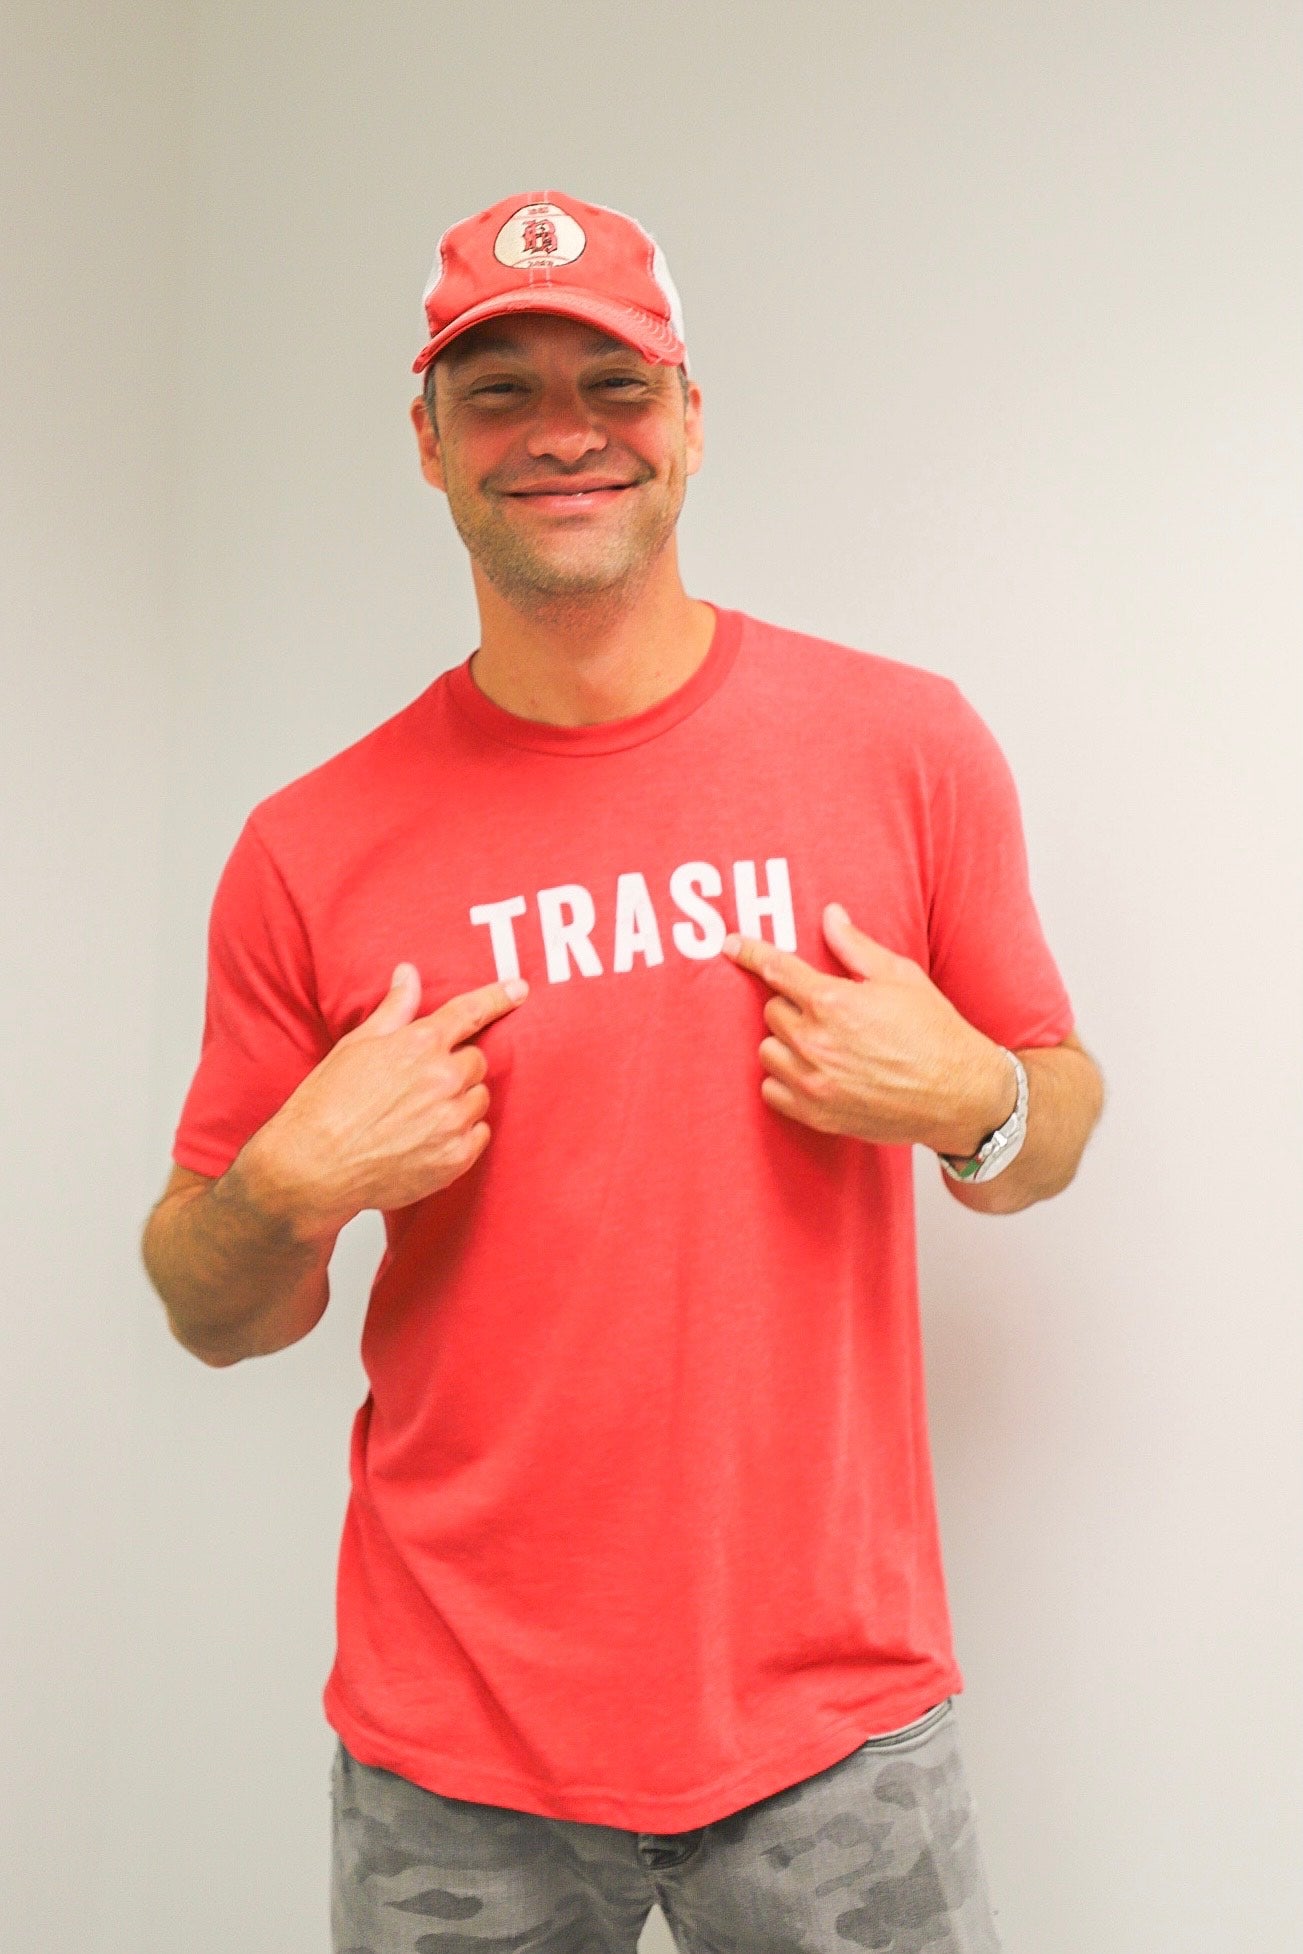 Trash T-Shirt